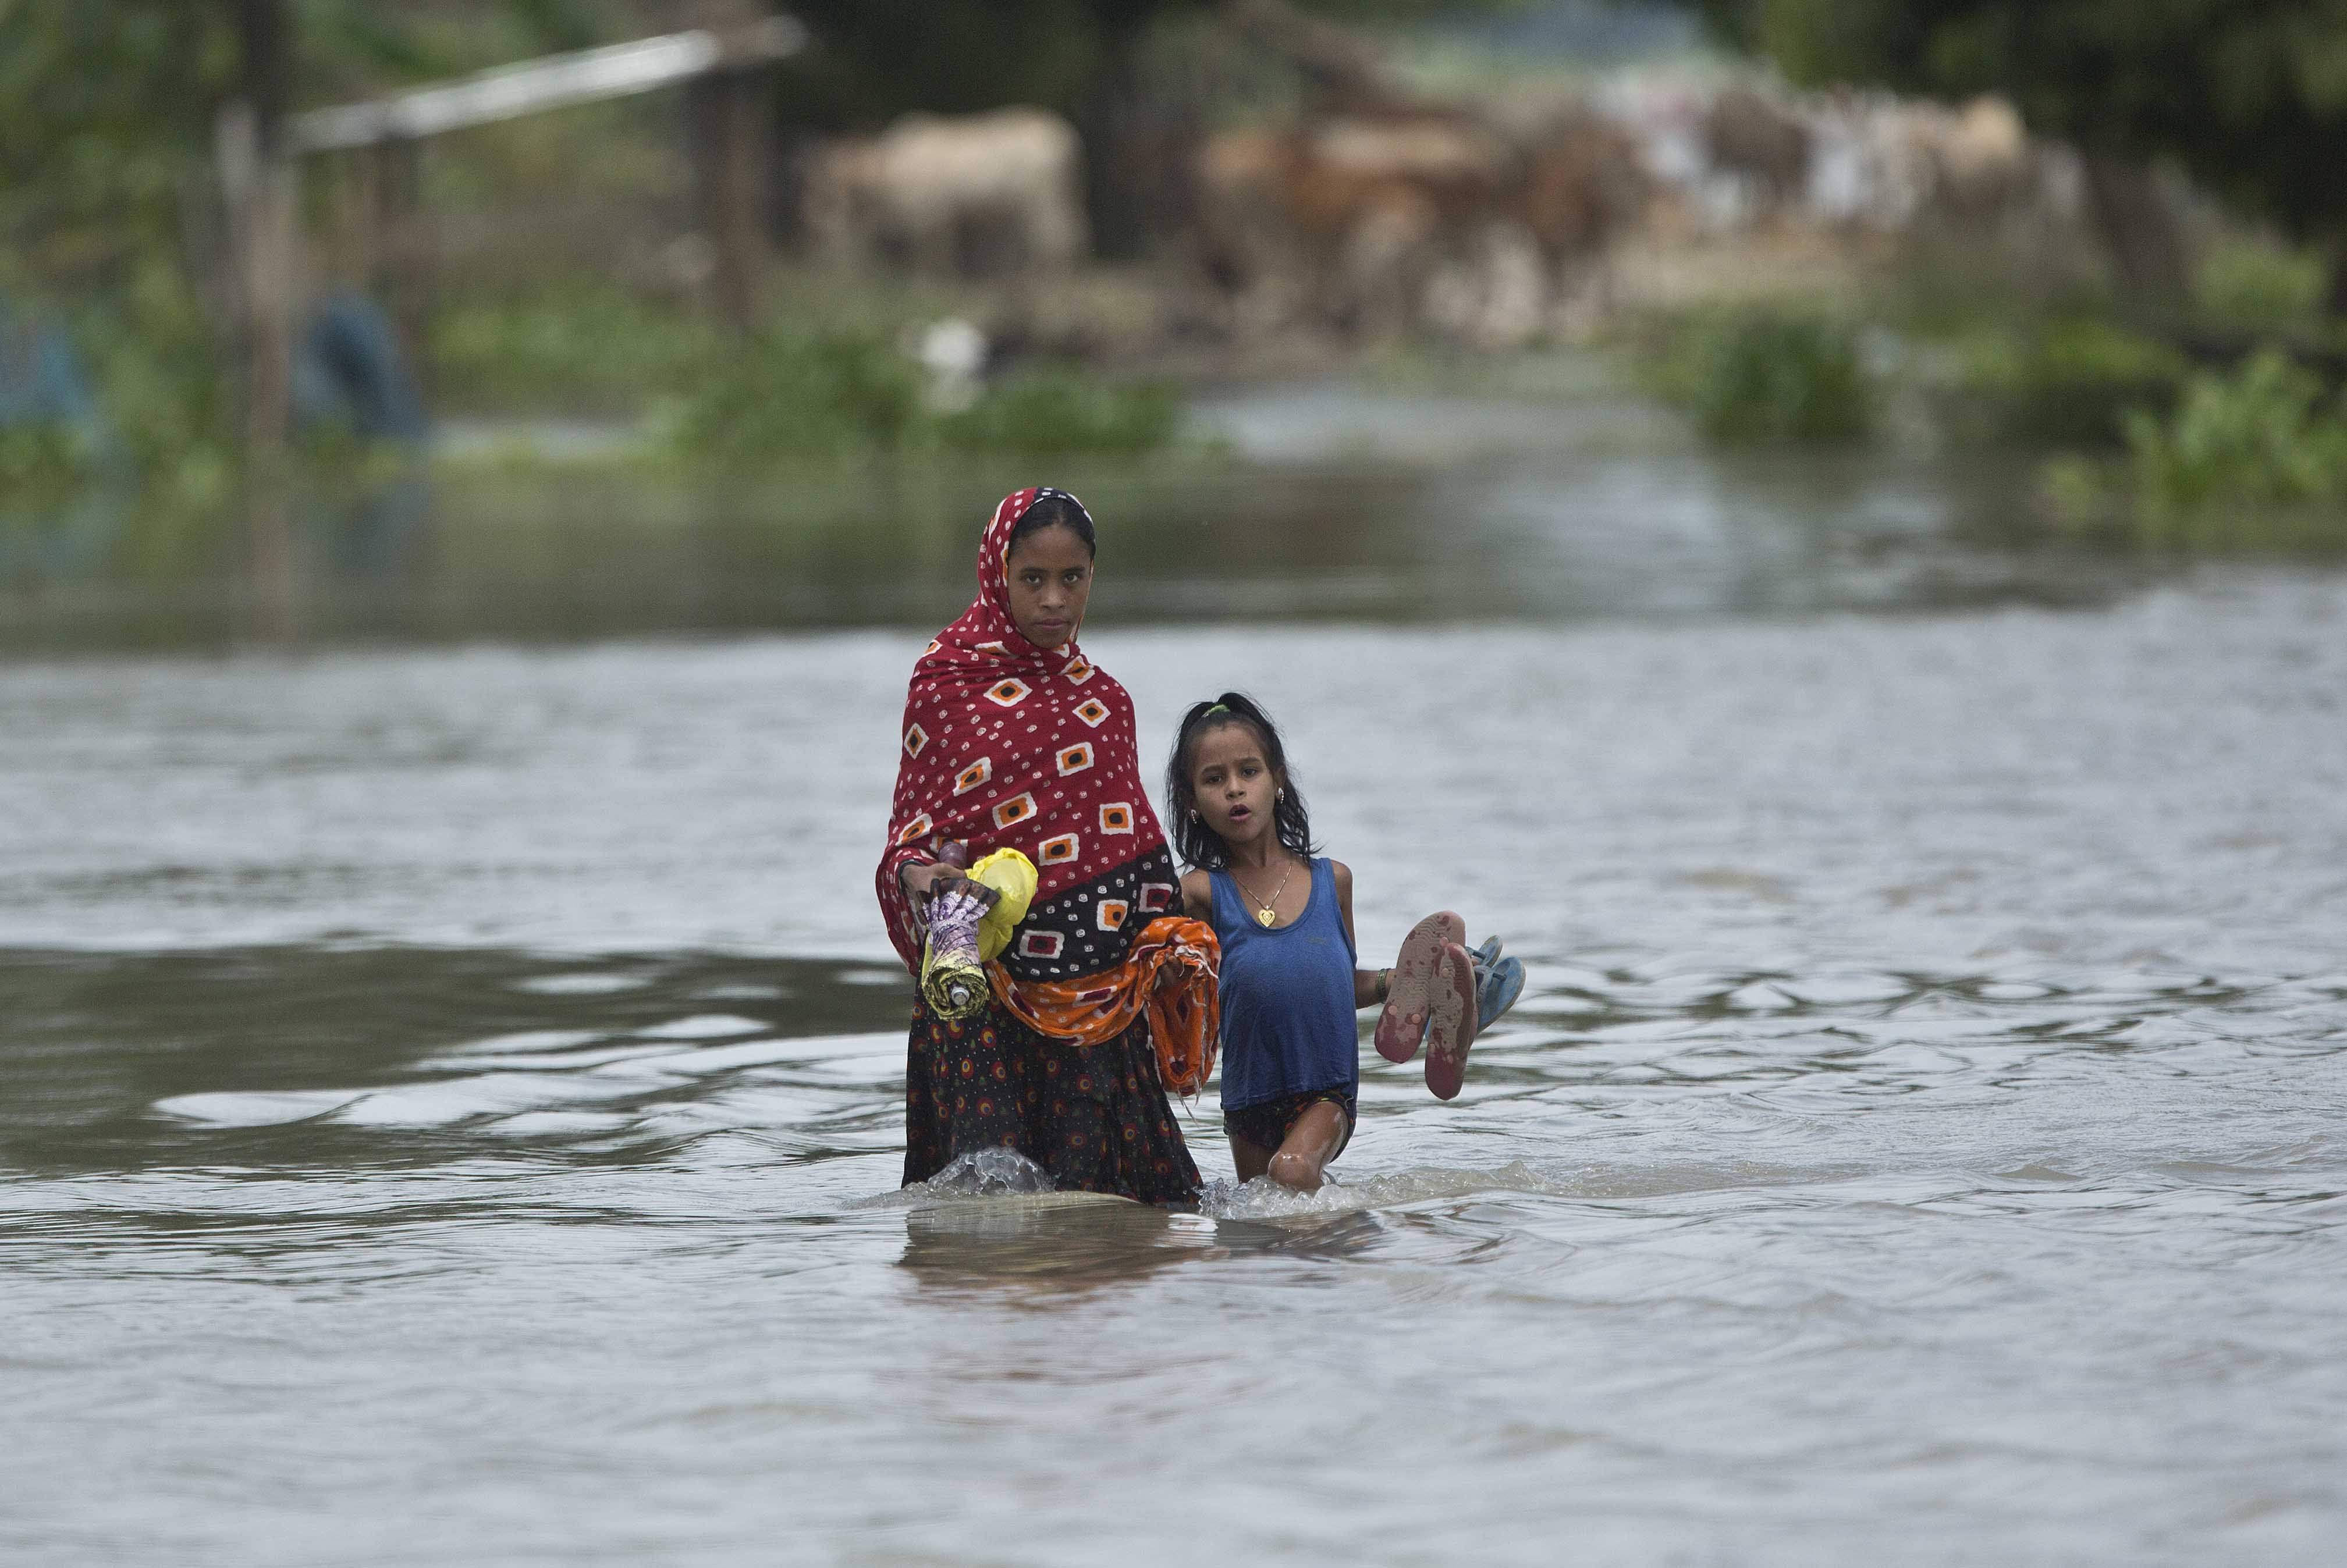 assam flood death toll touches 59 assam flood